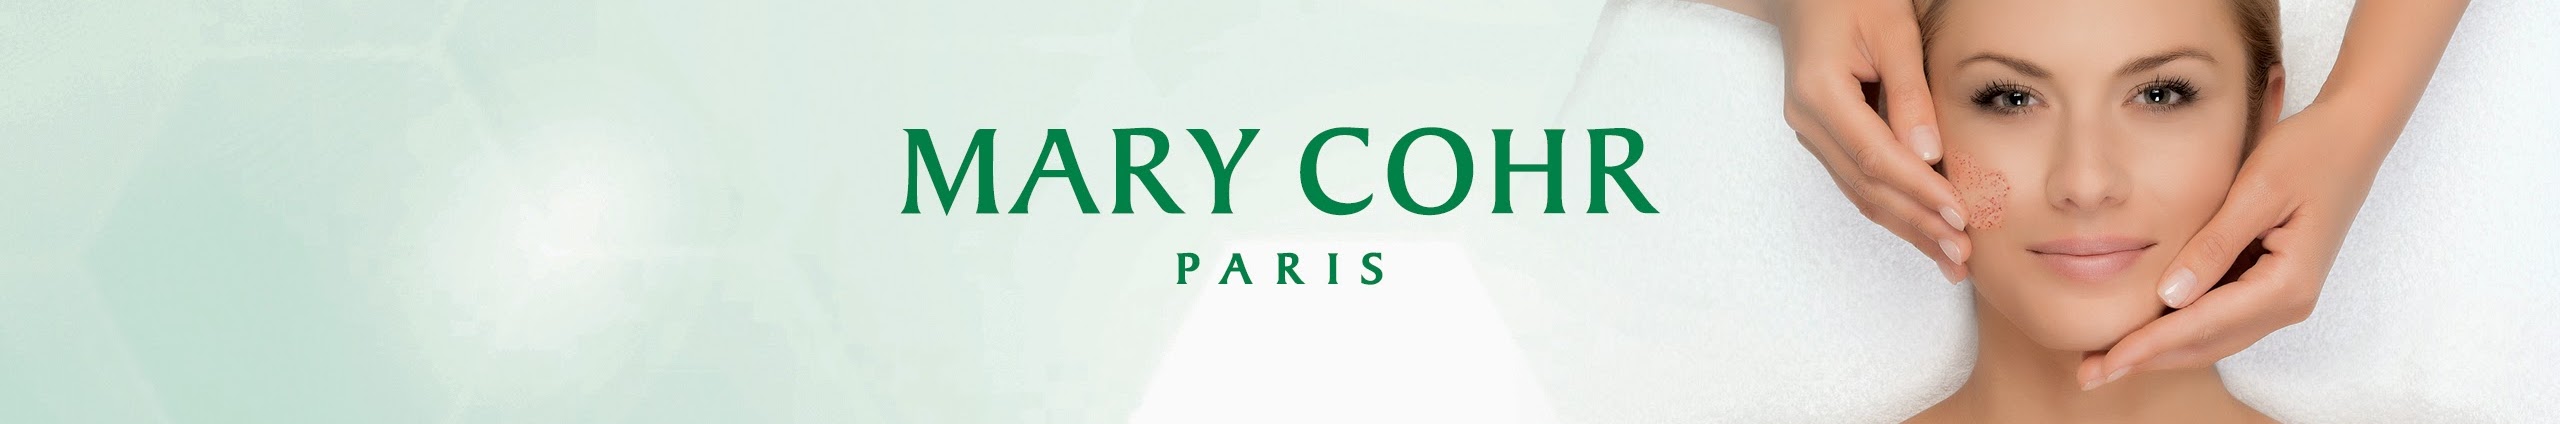 BlueSpa Chartres - Mary Cohr Paris